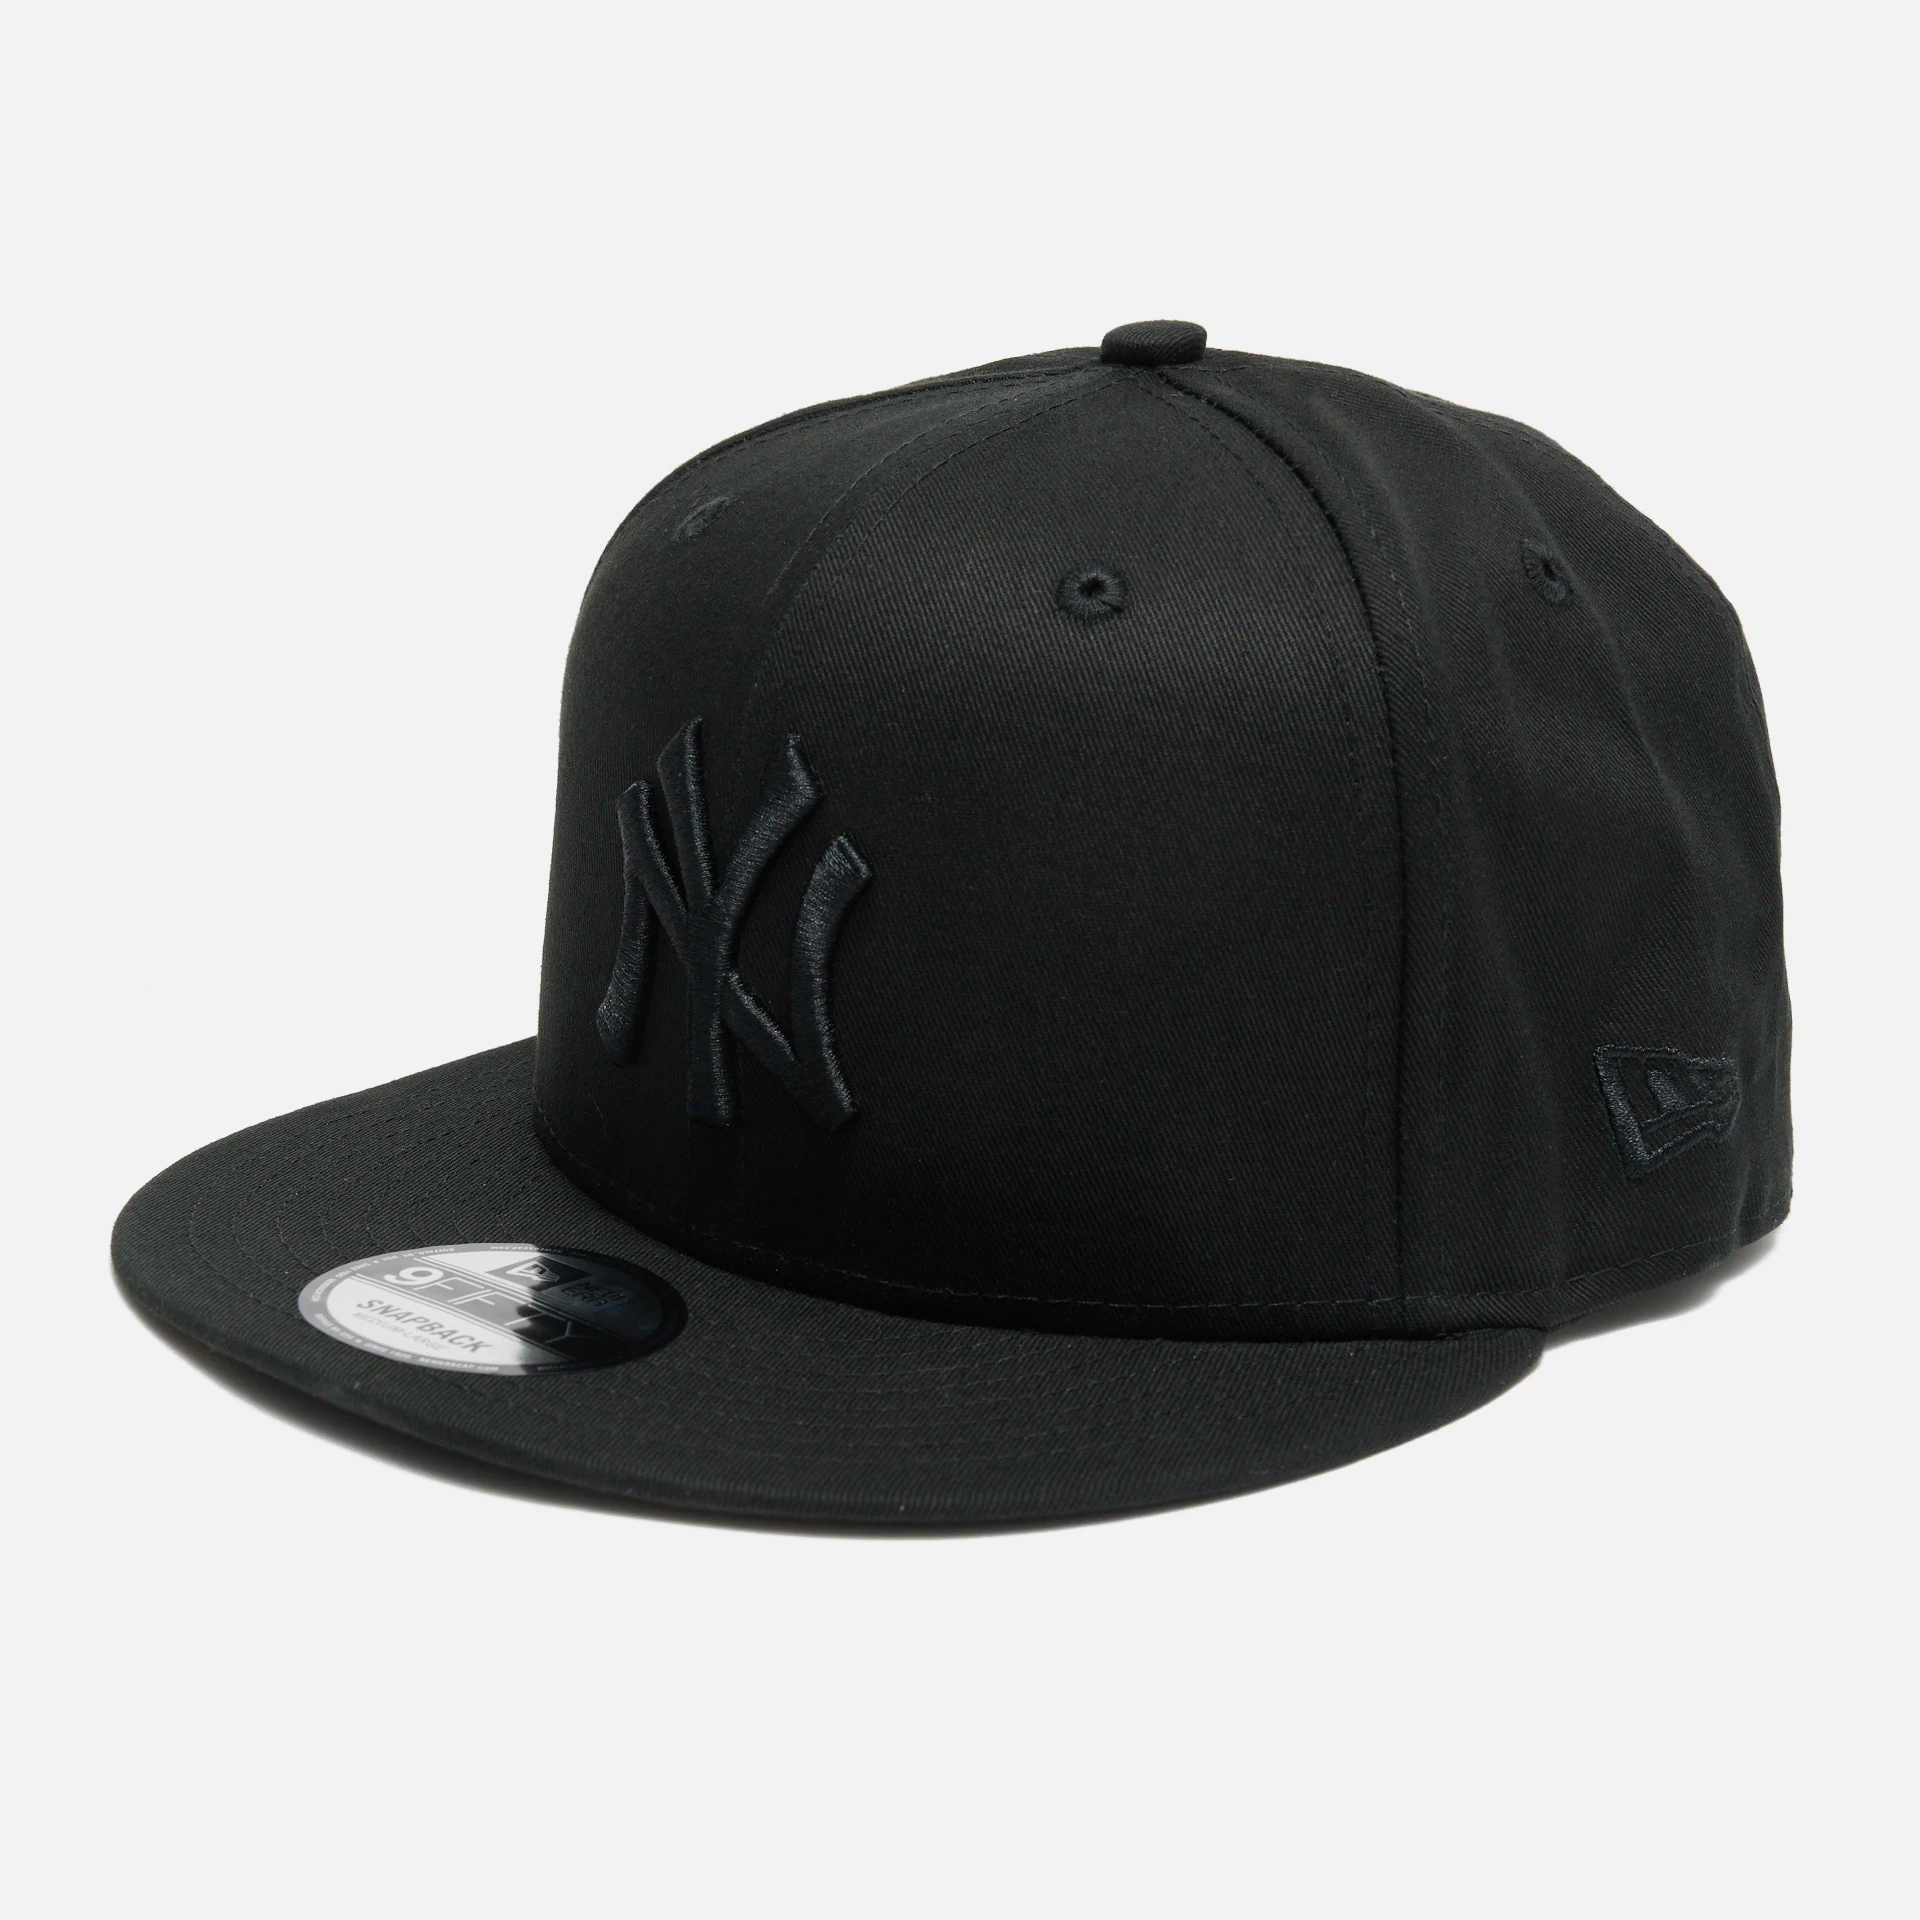 New Era MLB 9Fifty NY Yankees 9Fifty Snapback Cap Black/Black